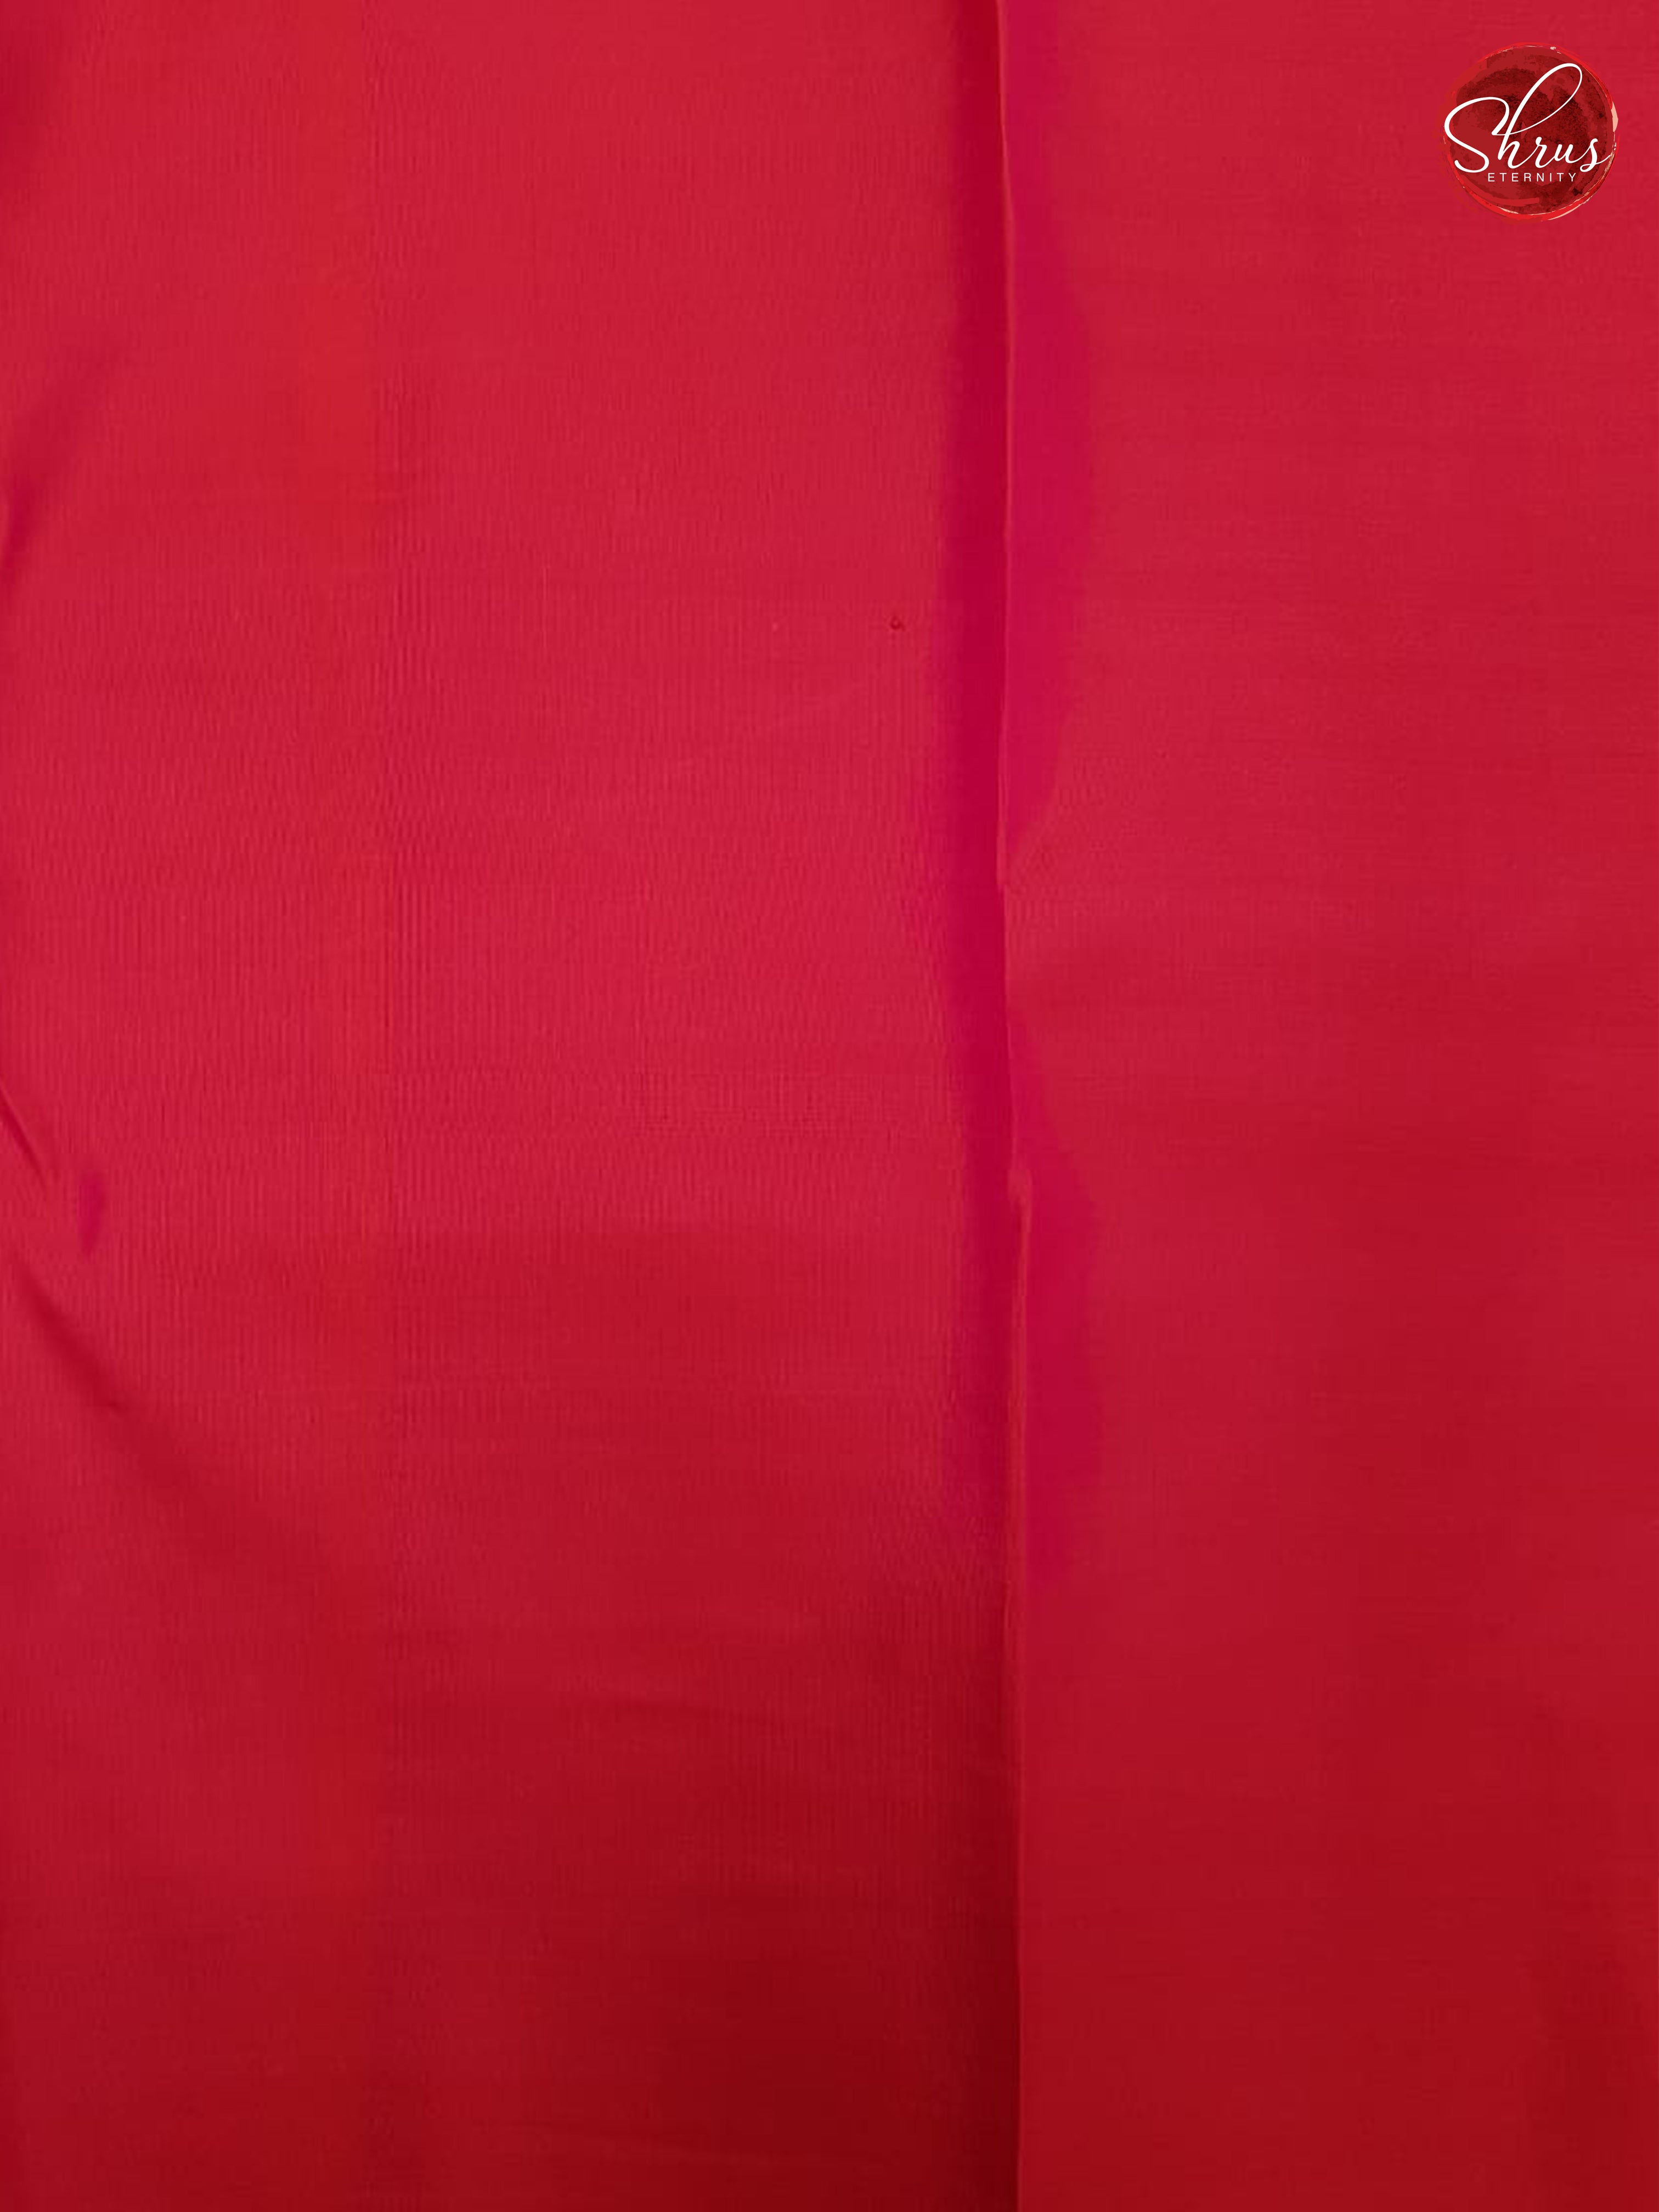 Red (Single Tone) - Kanchipuram Silk - Shop on ShrusEternity.com